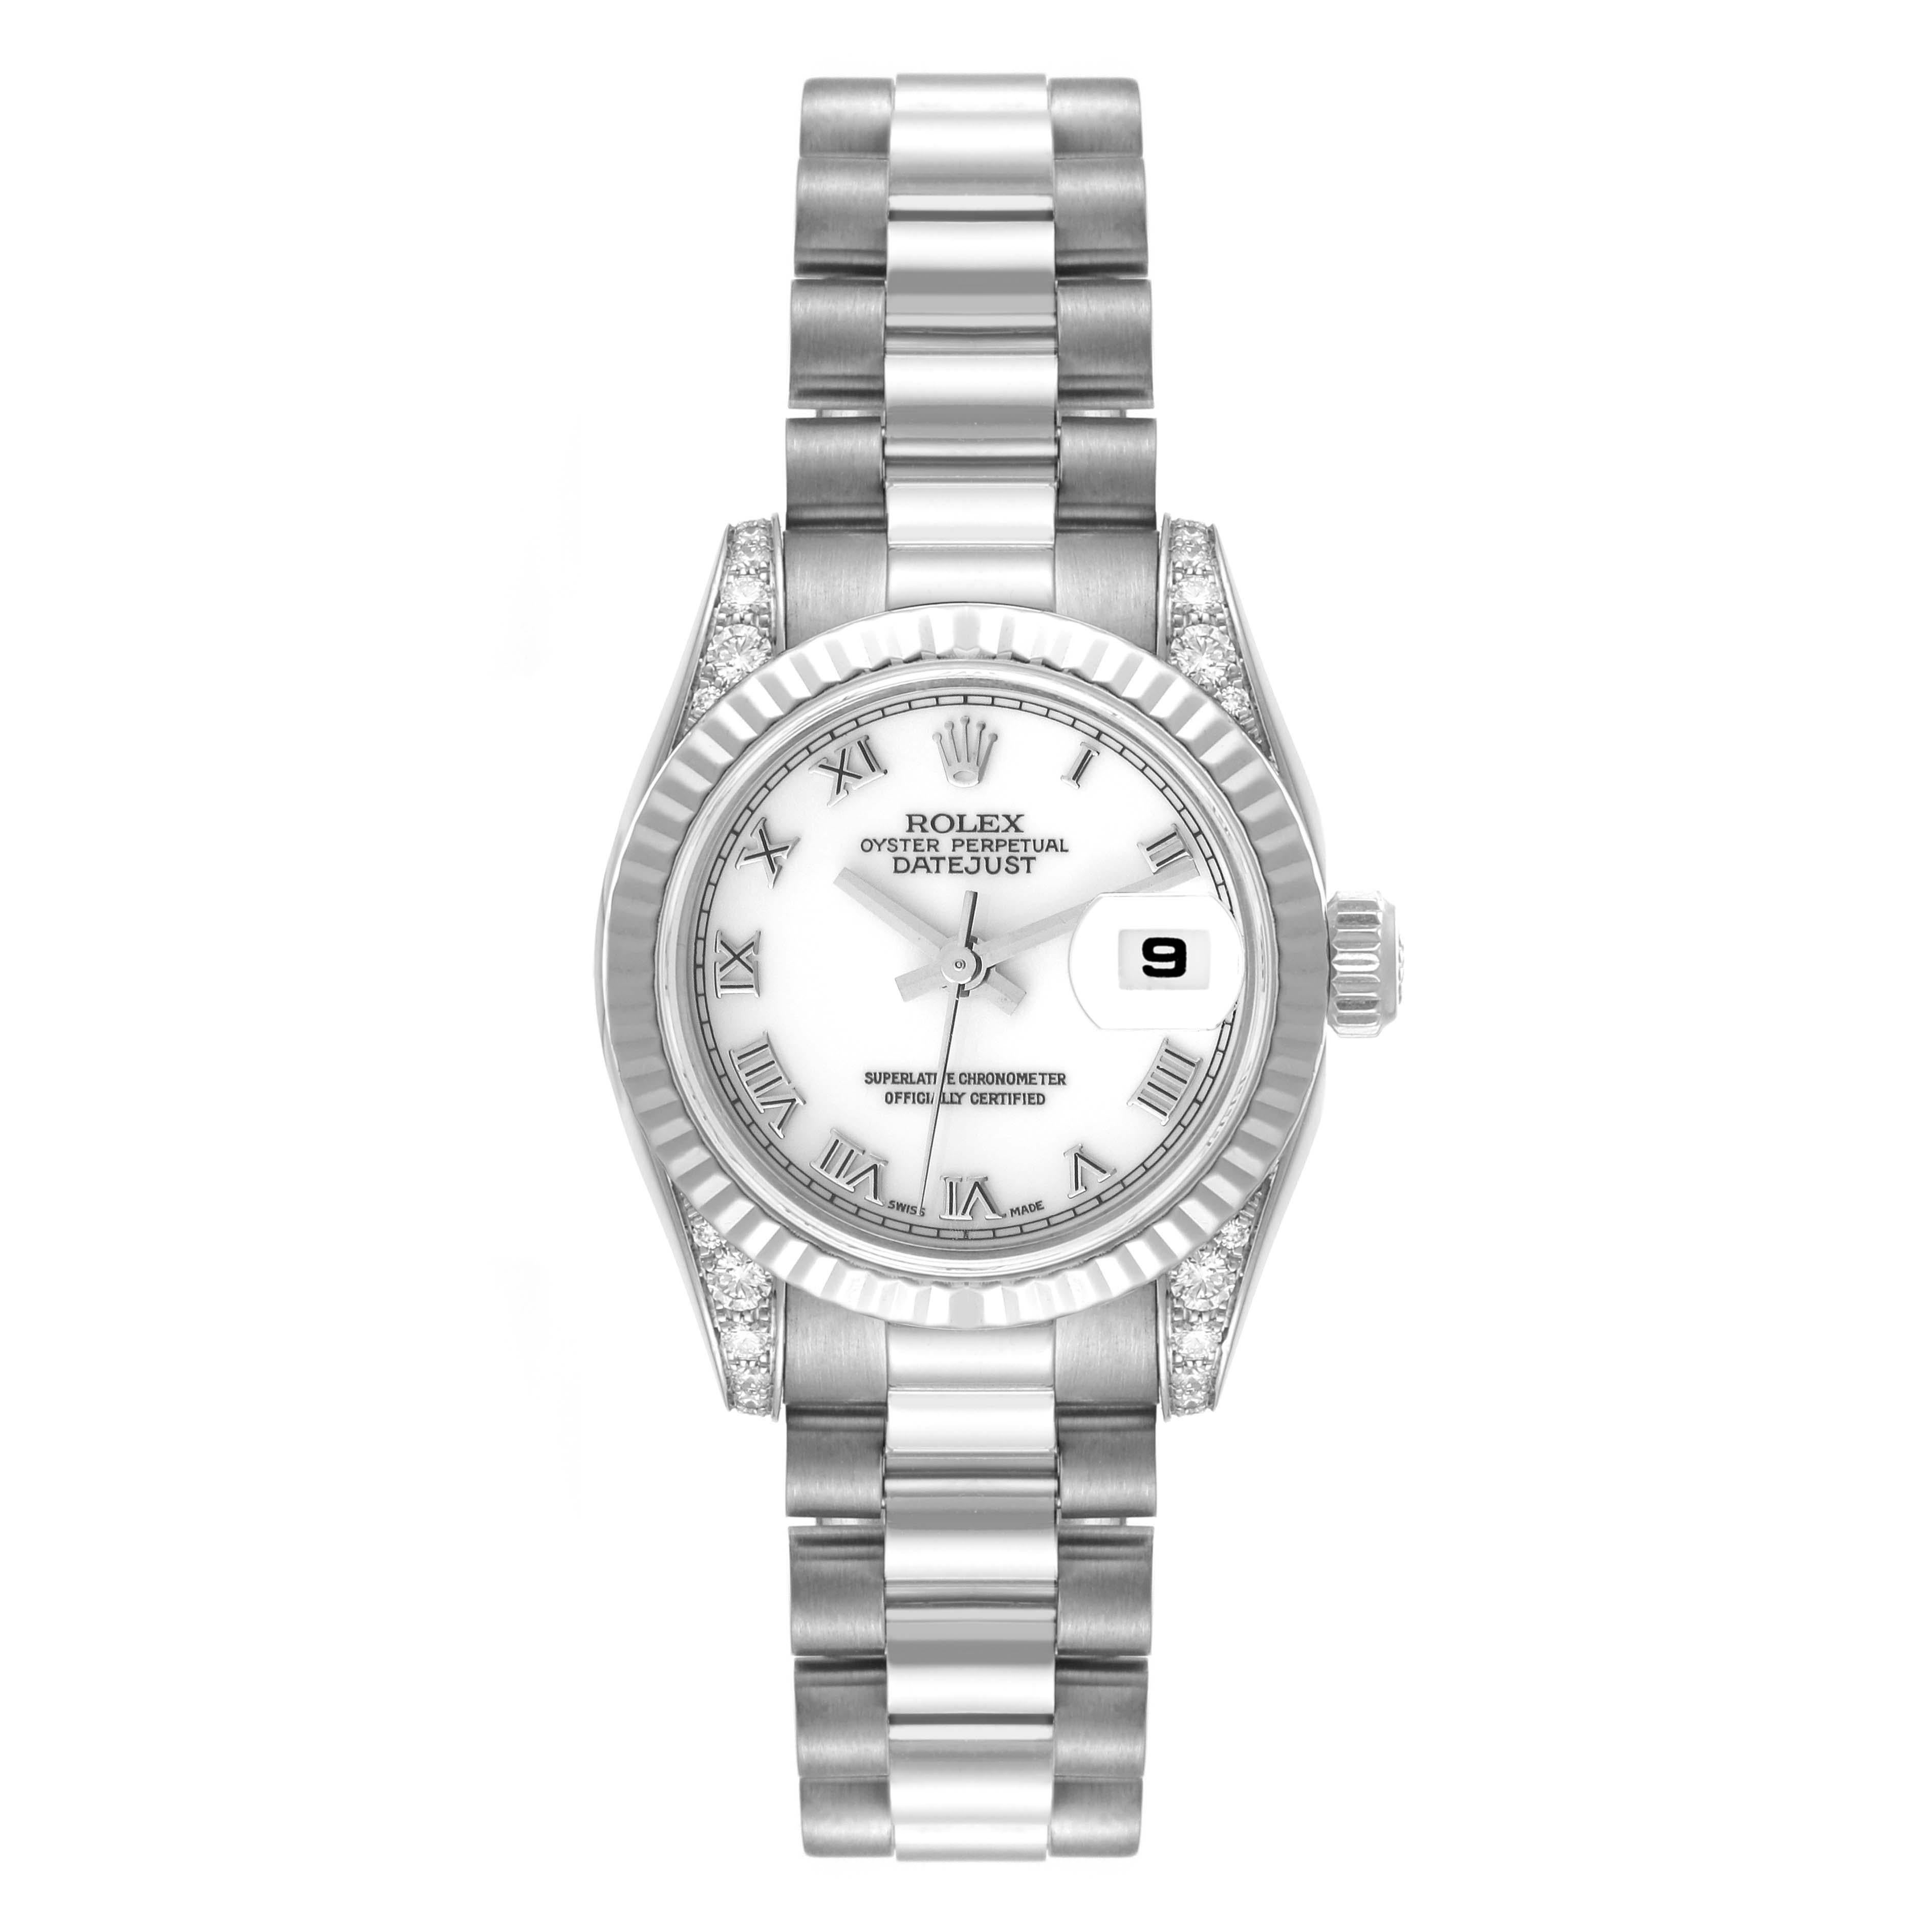 Rolex President Roman Dial White Gold Diamond Ladies Watch 179239. Mouvement à remontage automatique certifié chronomètre. Boîtier en or blanc 18 carats de 26,0 mm de diamètre. Logo Rolex sur la couronne. Œillets sertis de diamants d'origine de la